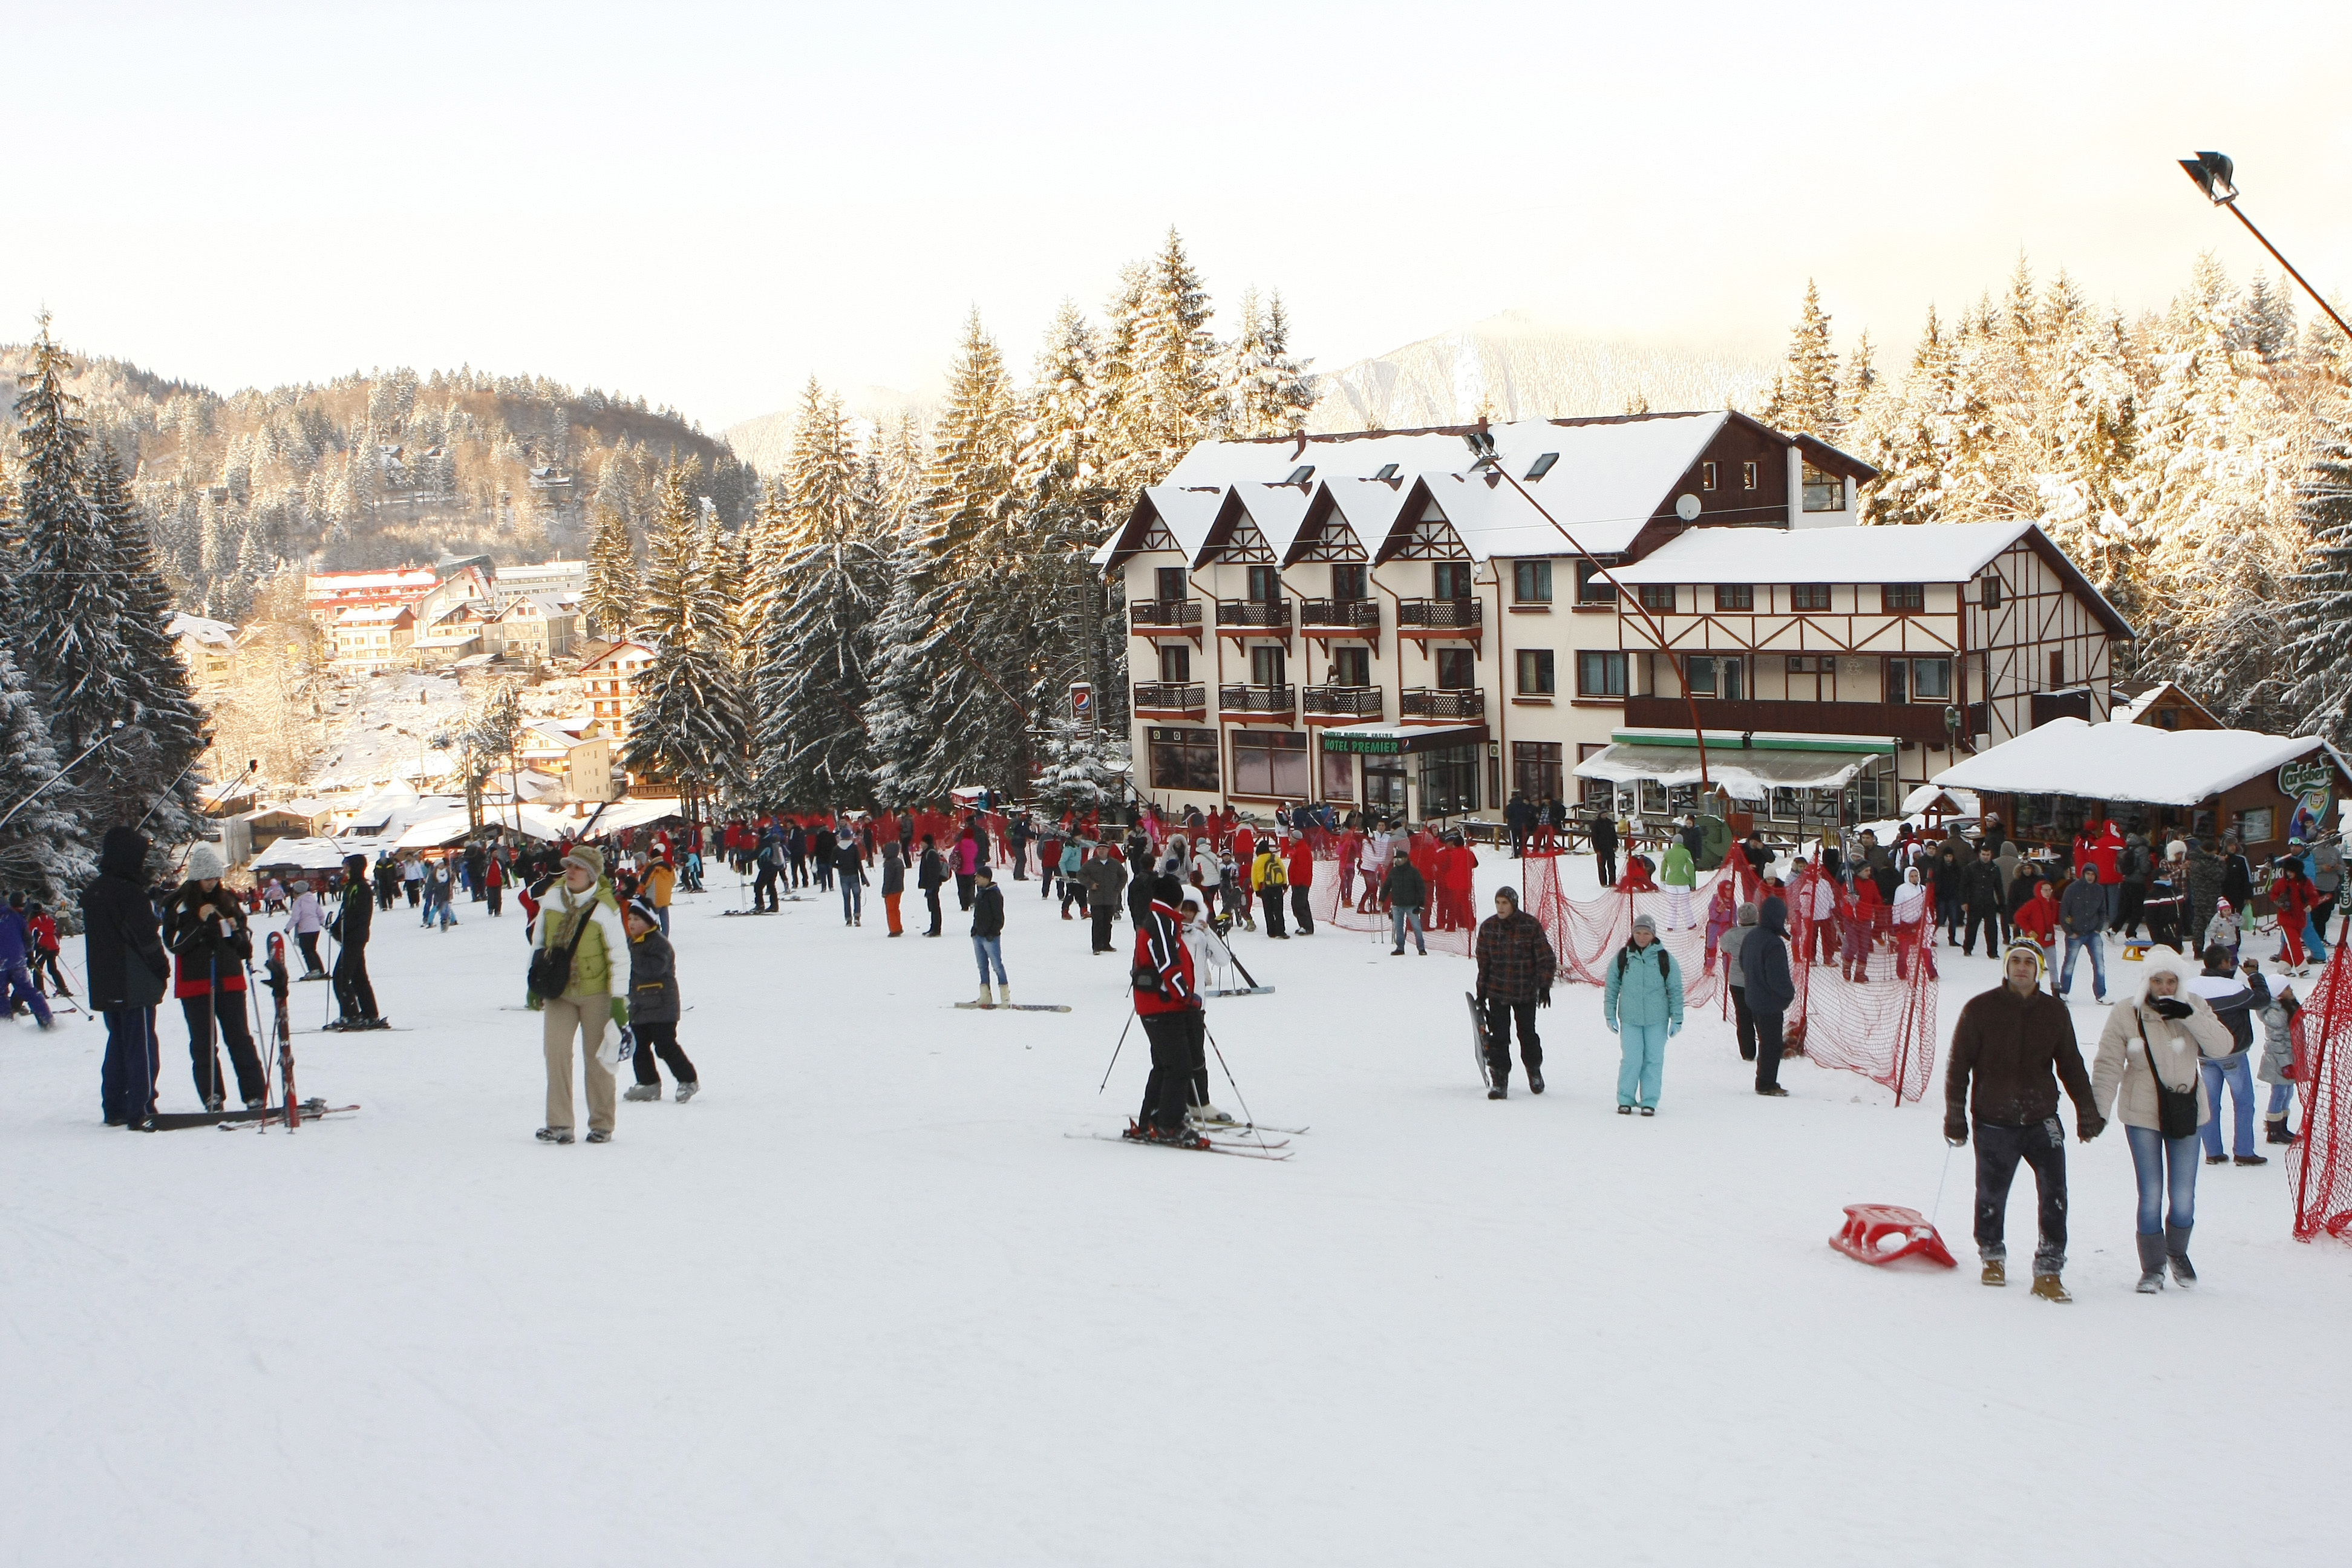 Începe sezonul de schi. Infrastructura de schi din România: 187 de pârtii cu o lungime de 162 de kilometri. Nicio investiţie publică nu s-a mai făcut în domeniul schiabil de trei ani